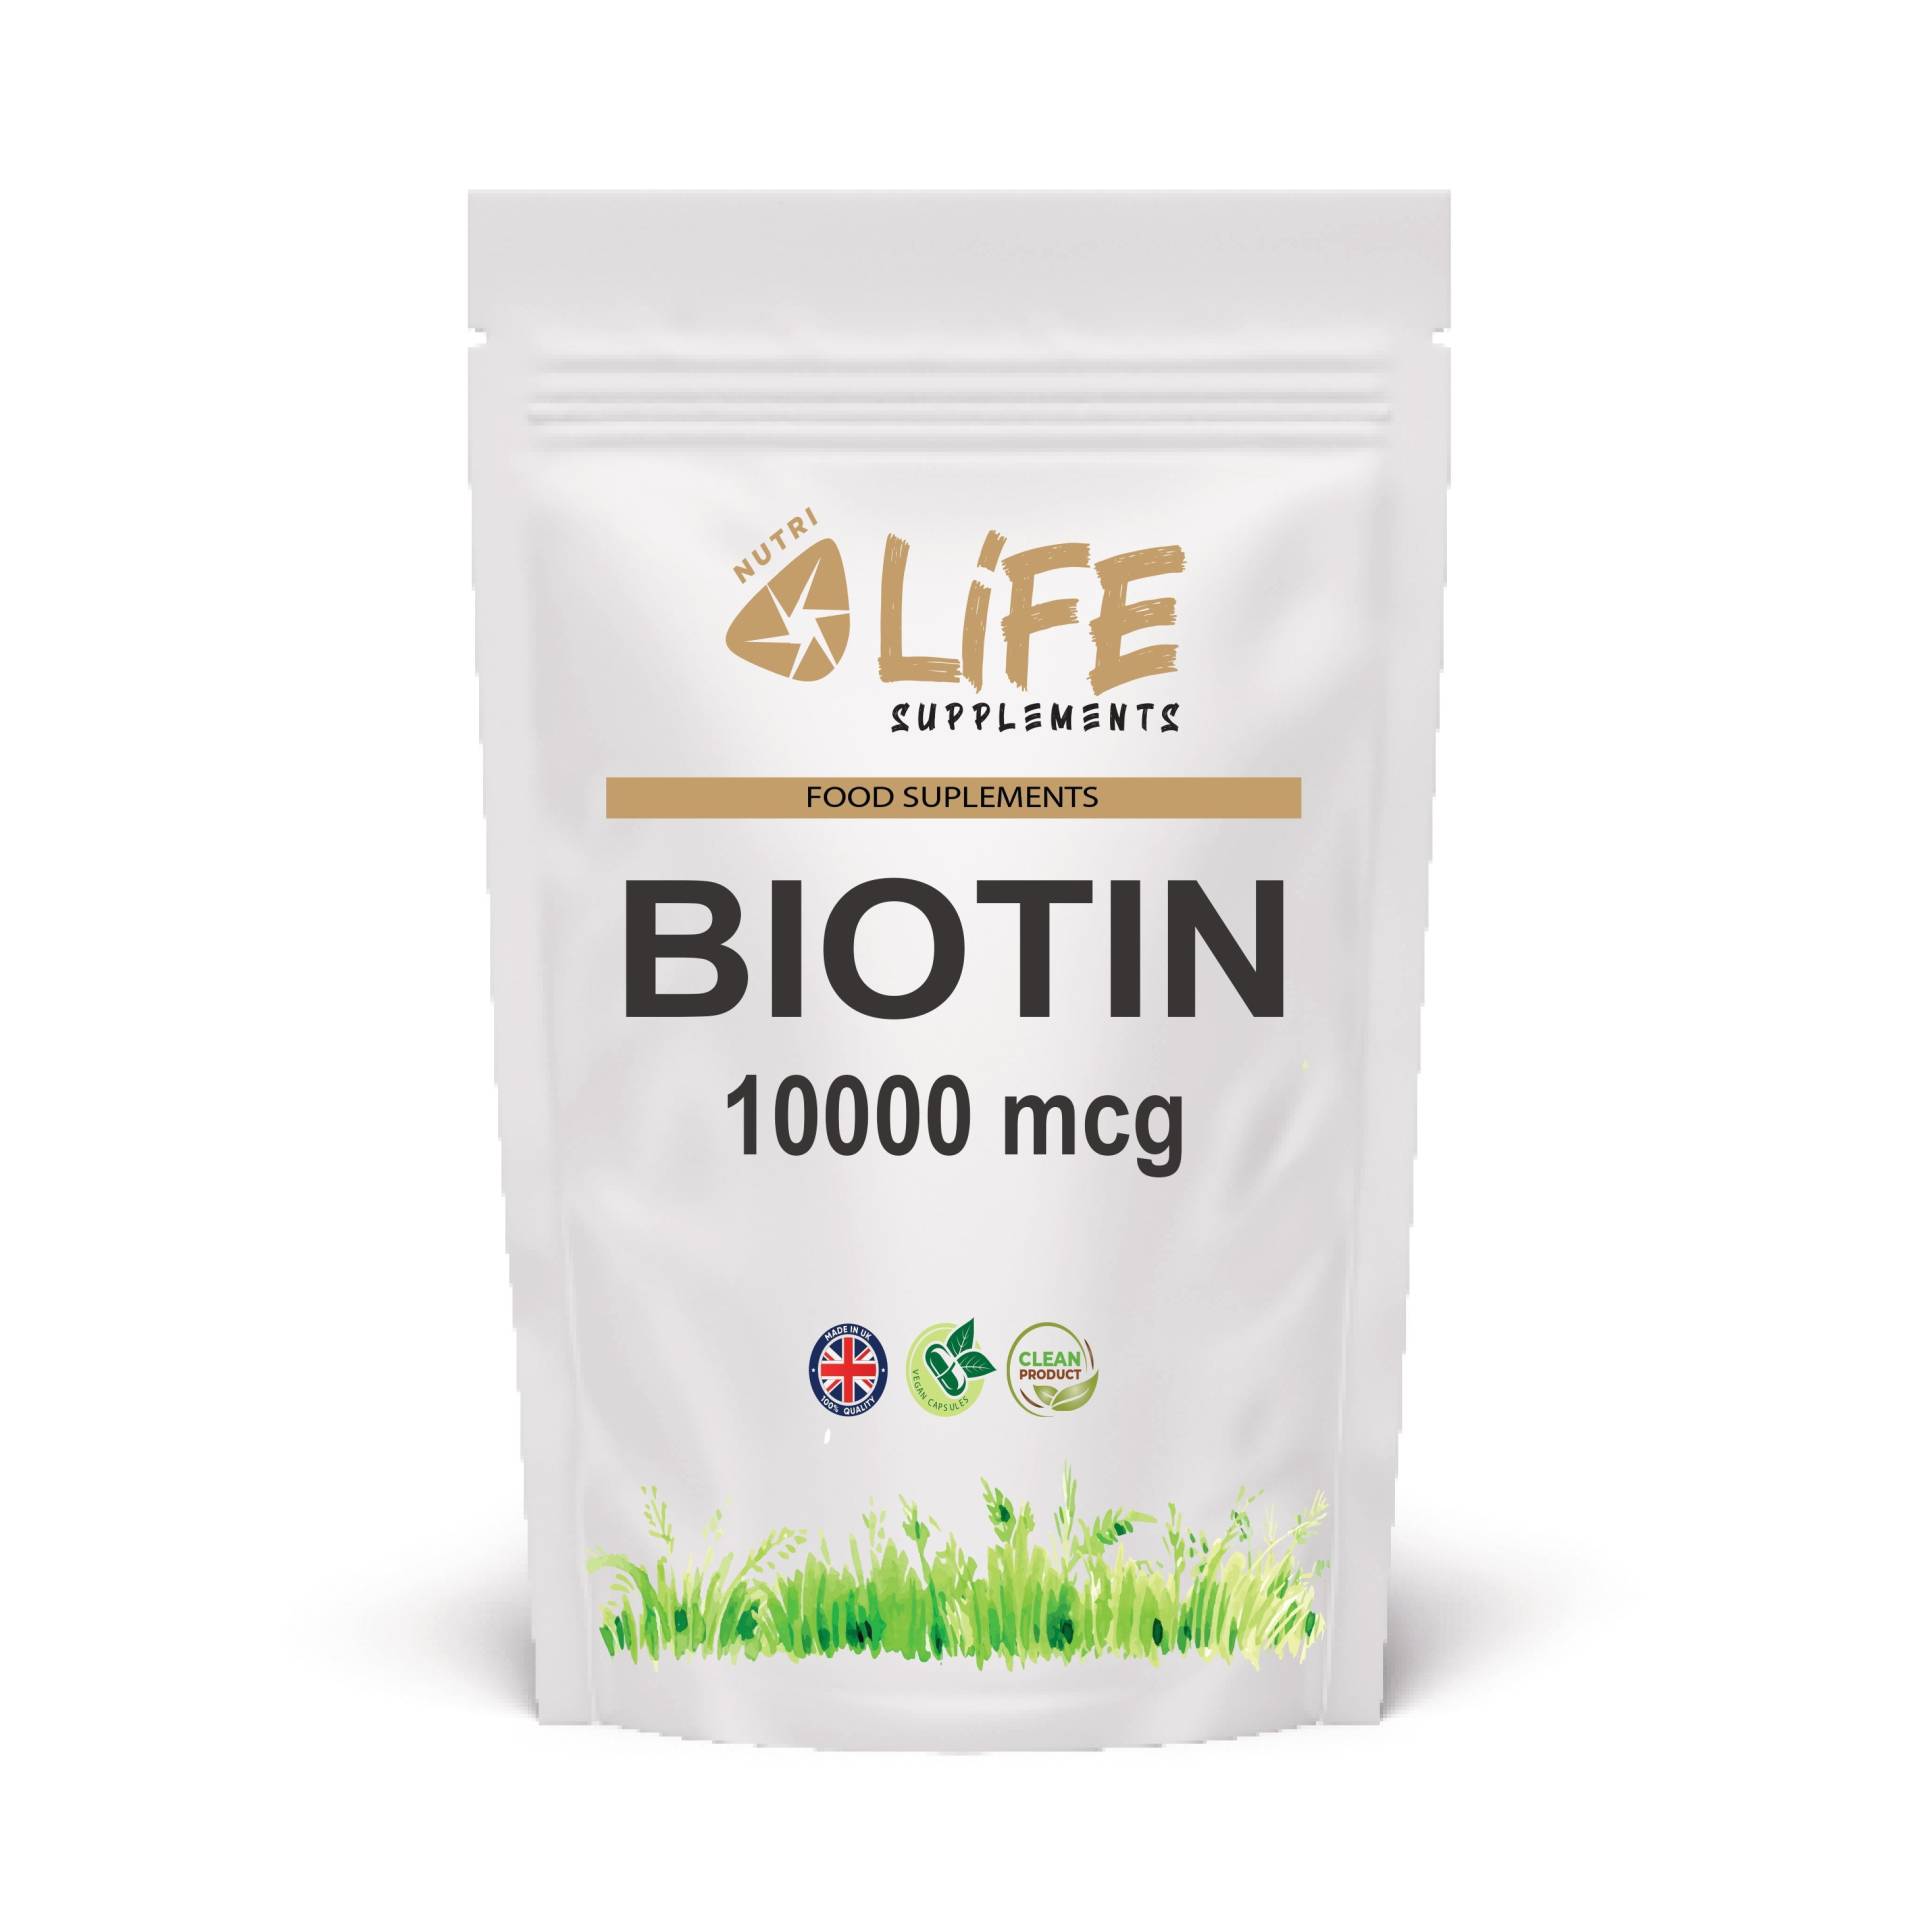 Biotin 190 Mg Kapseln Sauber Natürliche Ergänzung Vitamin B7 Uk von Etsy - NutriLifeSupplements